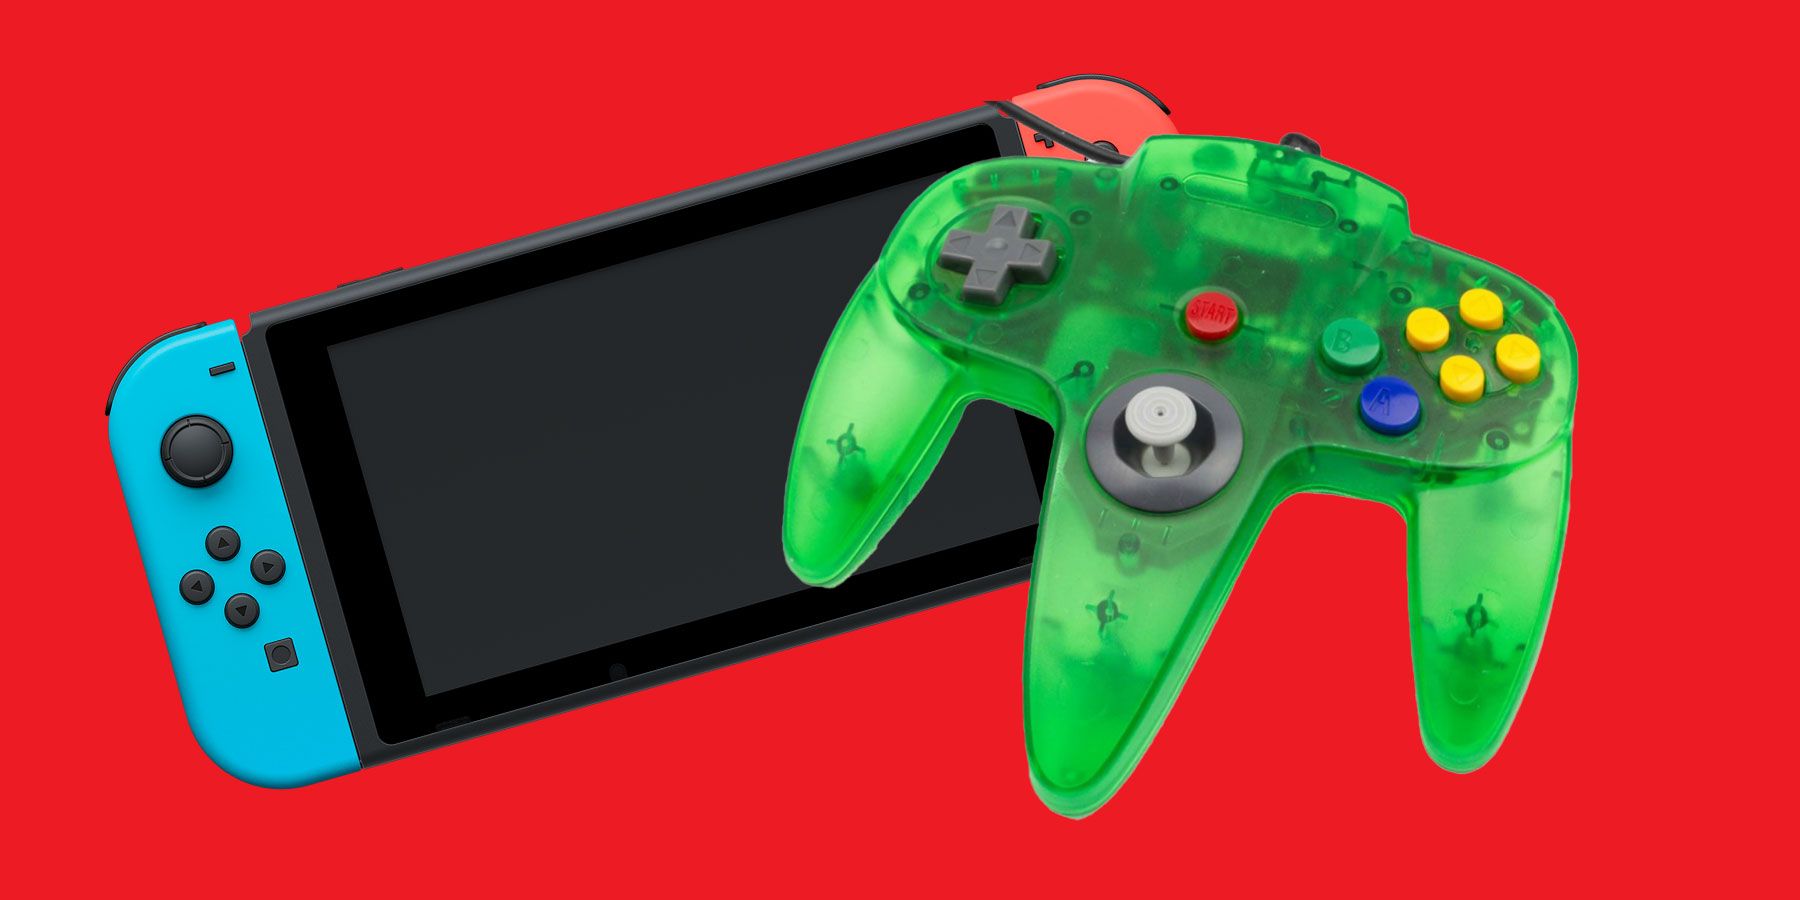 Nintendo bør genindføre gennemsigtigt farvet hardware